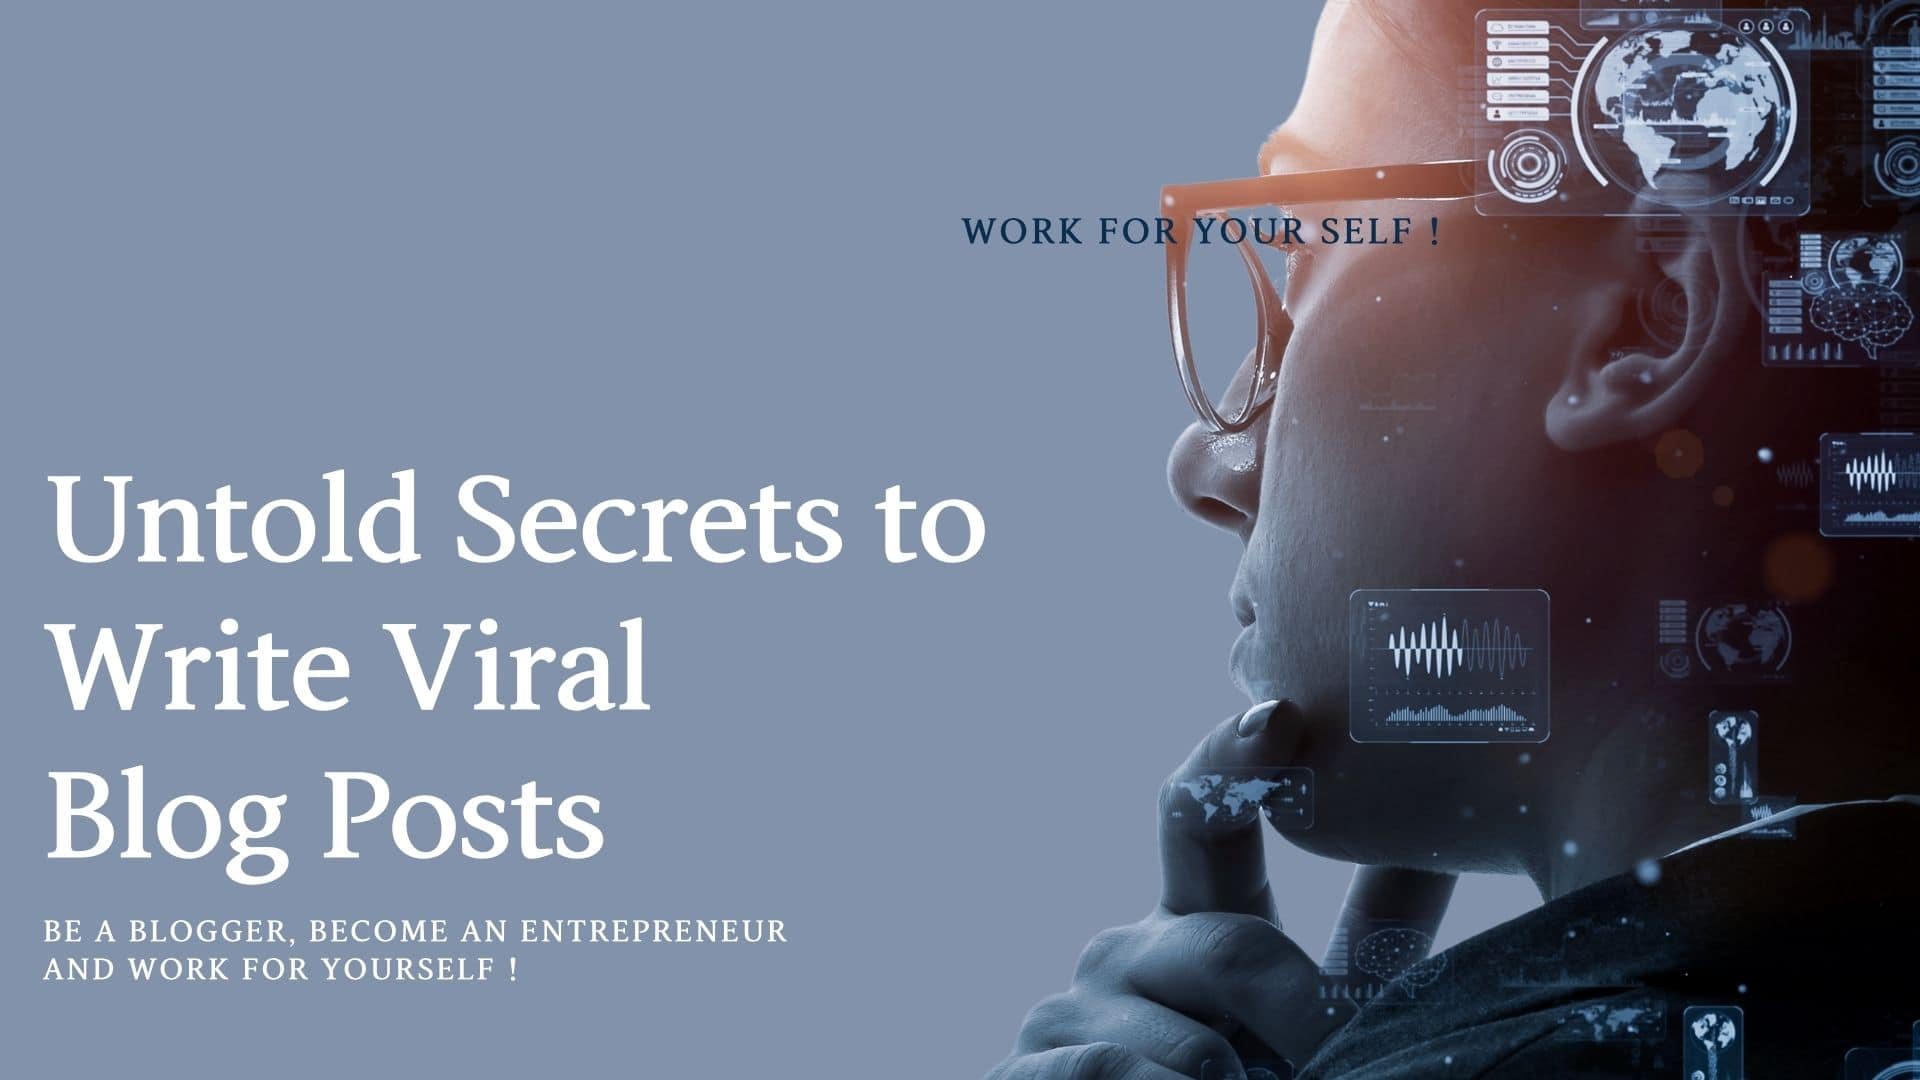 Untold Secrets to Write Viral Blog Posts mssaro